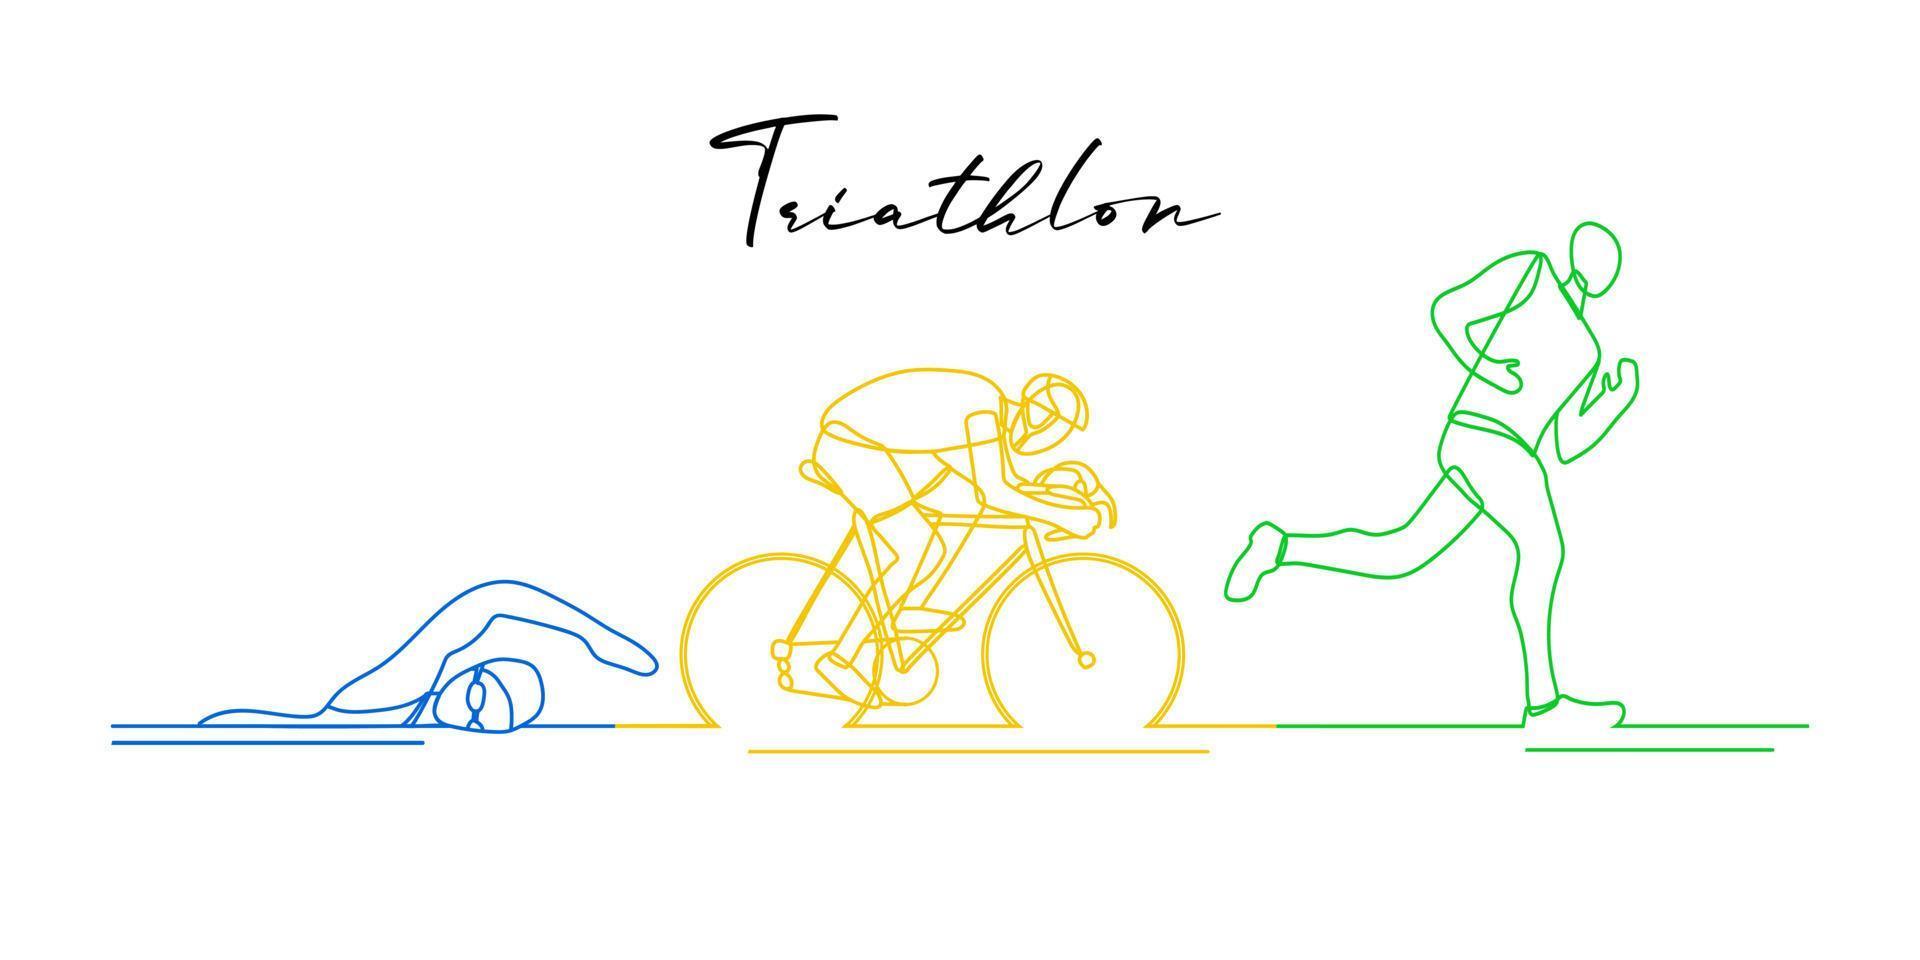 Triathlon. lineare handgezeichnete athleten. Wettkampf im Schwimmen, Radfahren und Laufen vektor